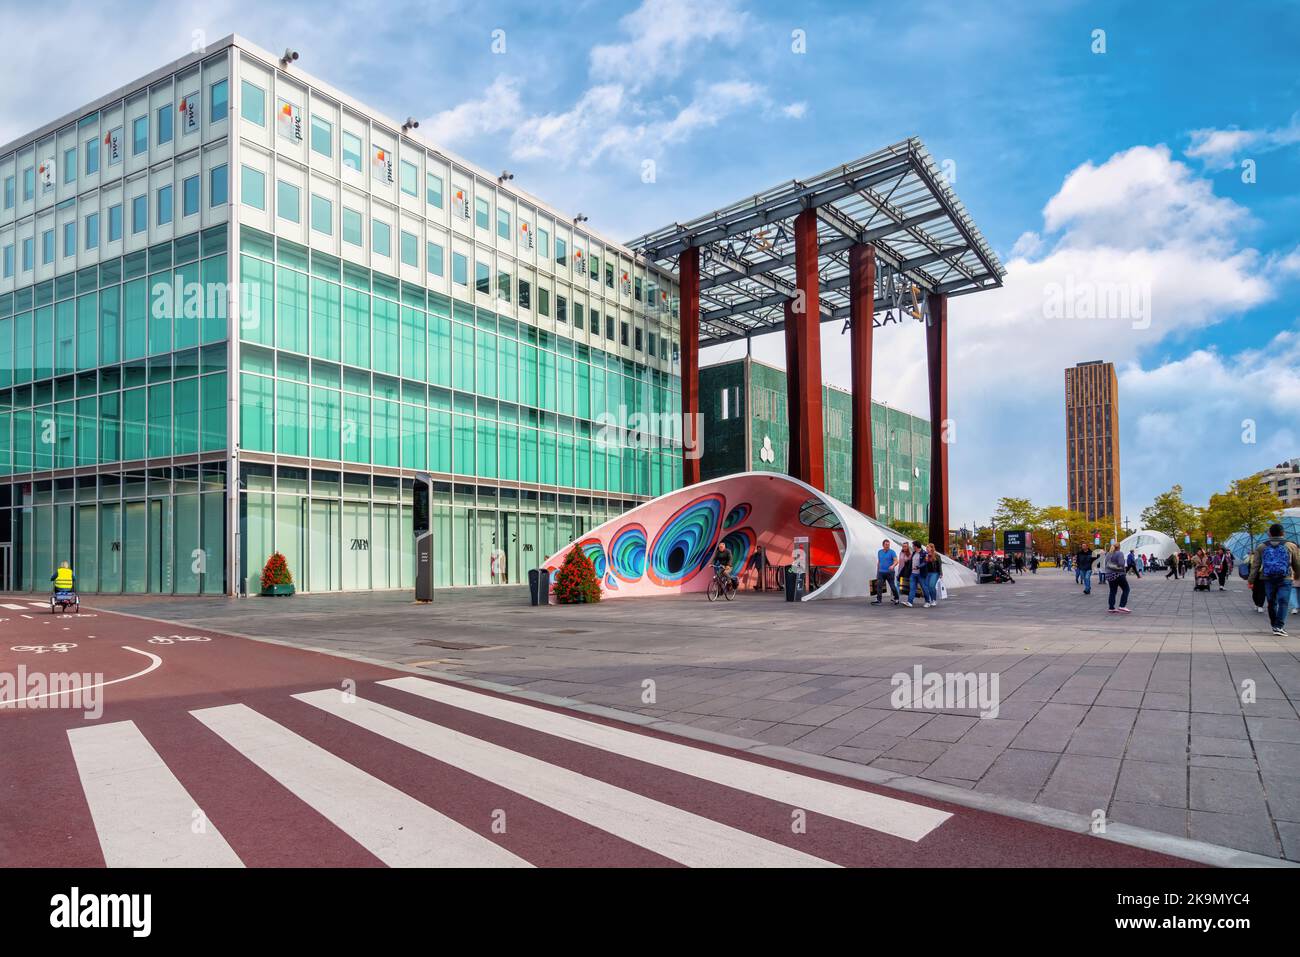 Eindhoven (Piazza), Paesi Bassi, 2022: Piazza dello shopping con grande baldacchino all'ingresso del centro commerciale Piazza, progettato dall'architetto Massimiliano Fuksas. Foto Stock